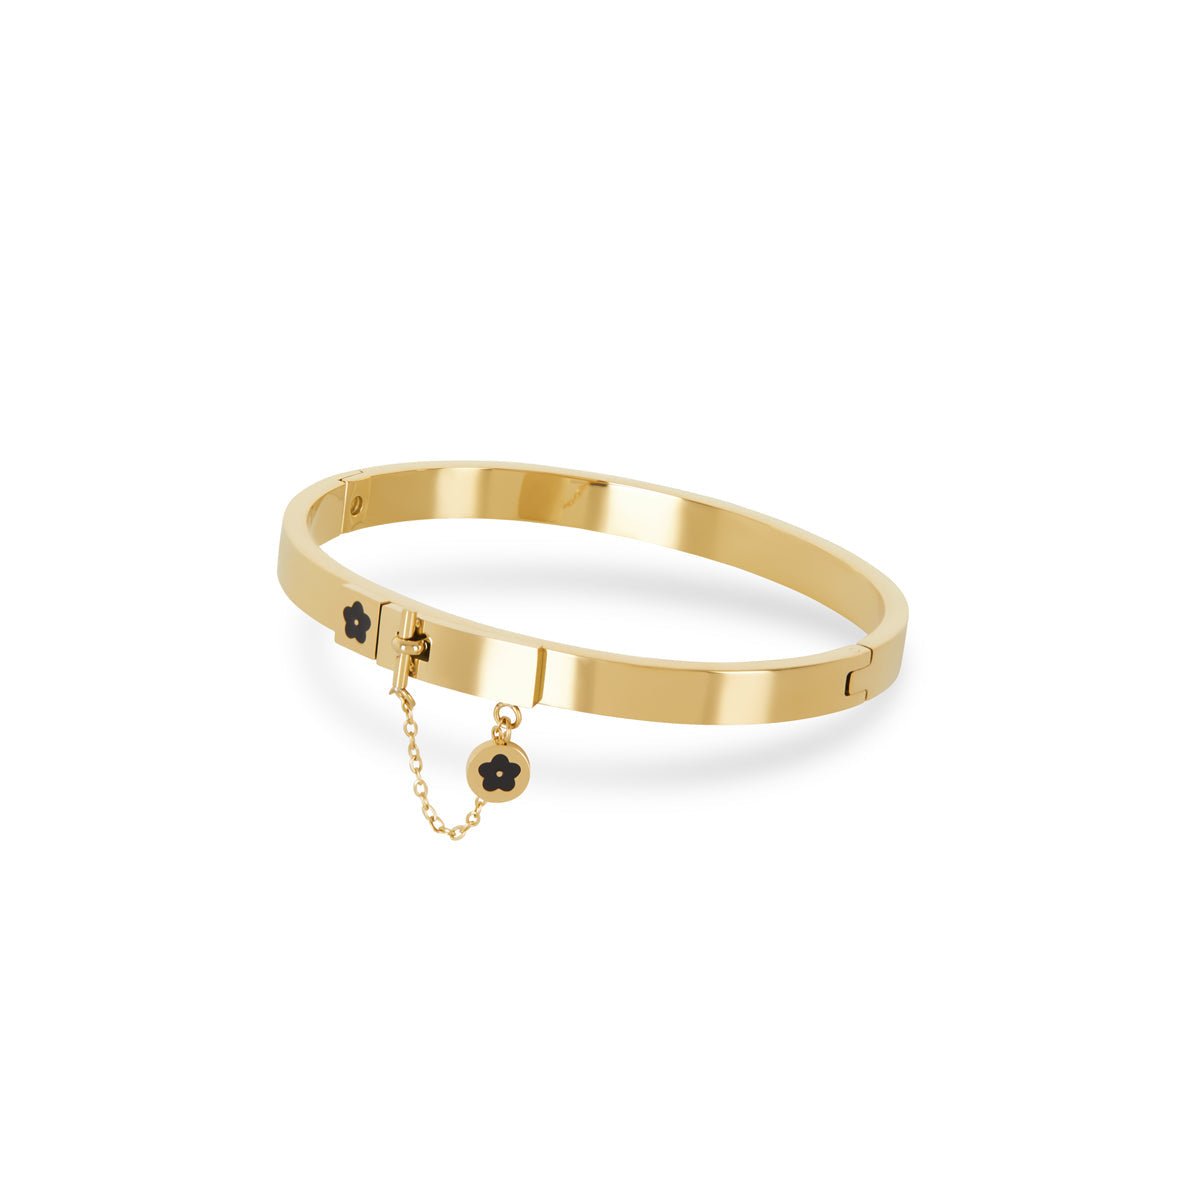 Bracelete Flor Lock Charm Banhada em Ouro 18K - Murano Joias